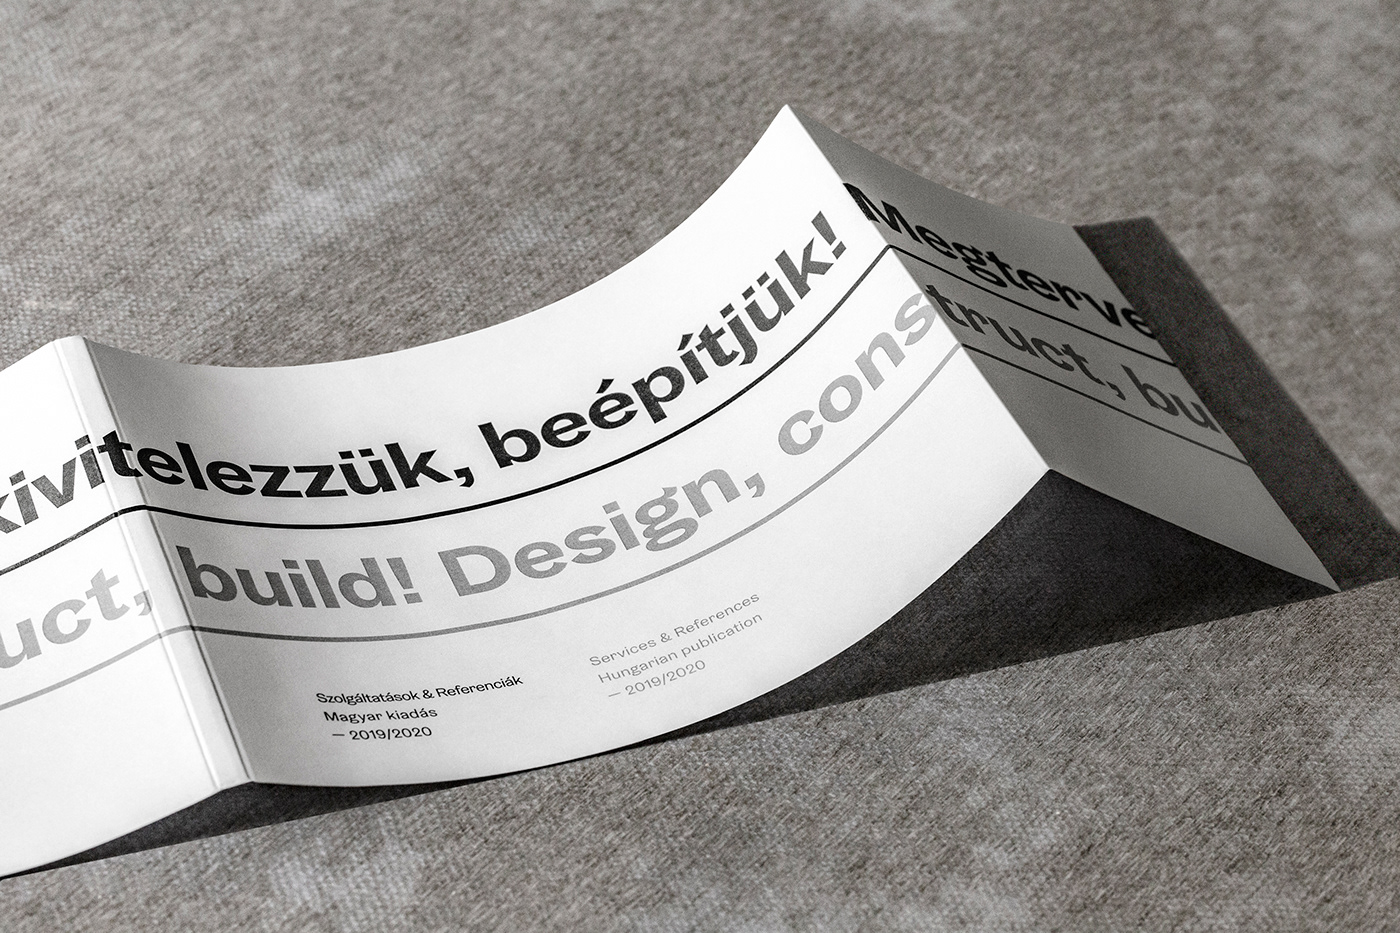 Business card design idea #315: Faalu